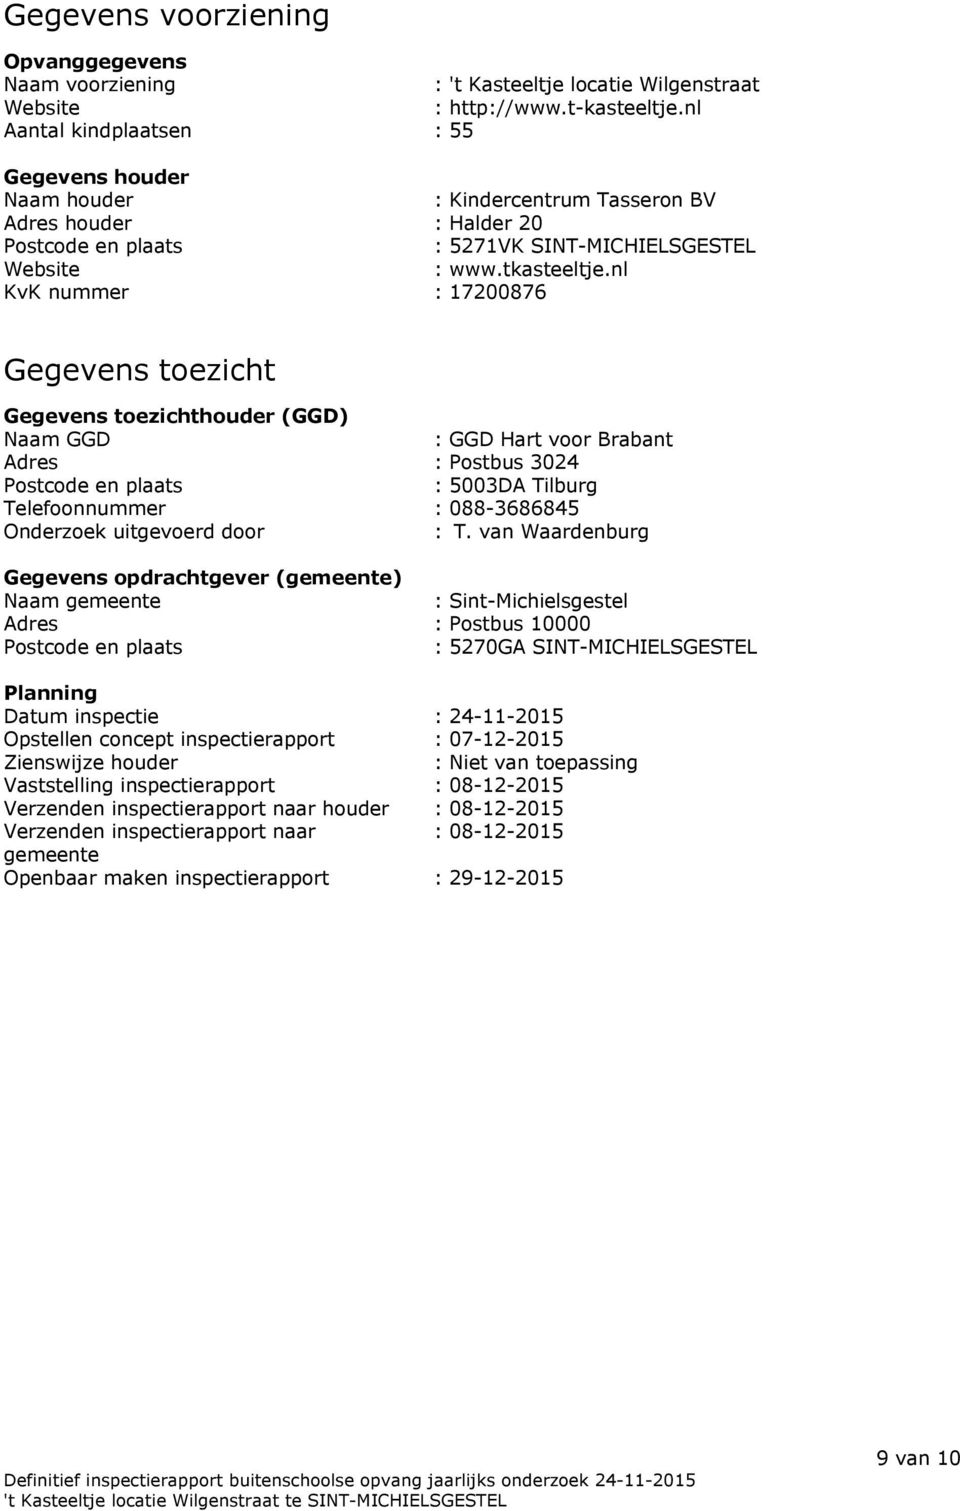 nl KvK nummer : 17200876 Gegevens toezicht Gegevens toezichthouder (GGD) Naam GGD : GGD Hart voor Brabant Adres : Postbus 3024 Postcode en plaats : 5003DA Tilburg Telefoonnummer : 088-3686845